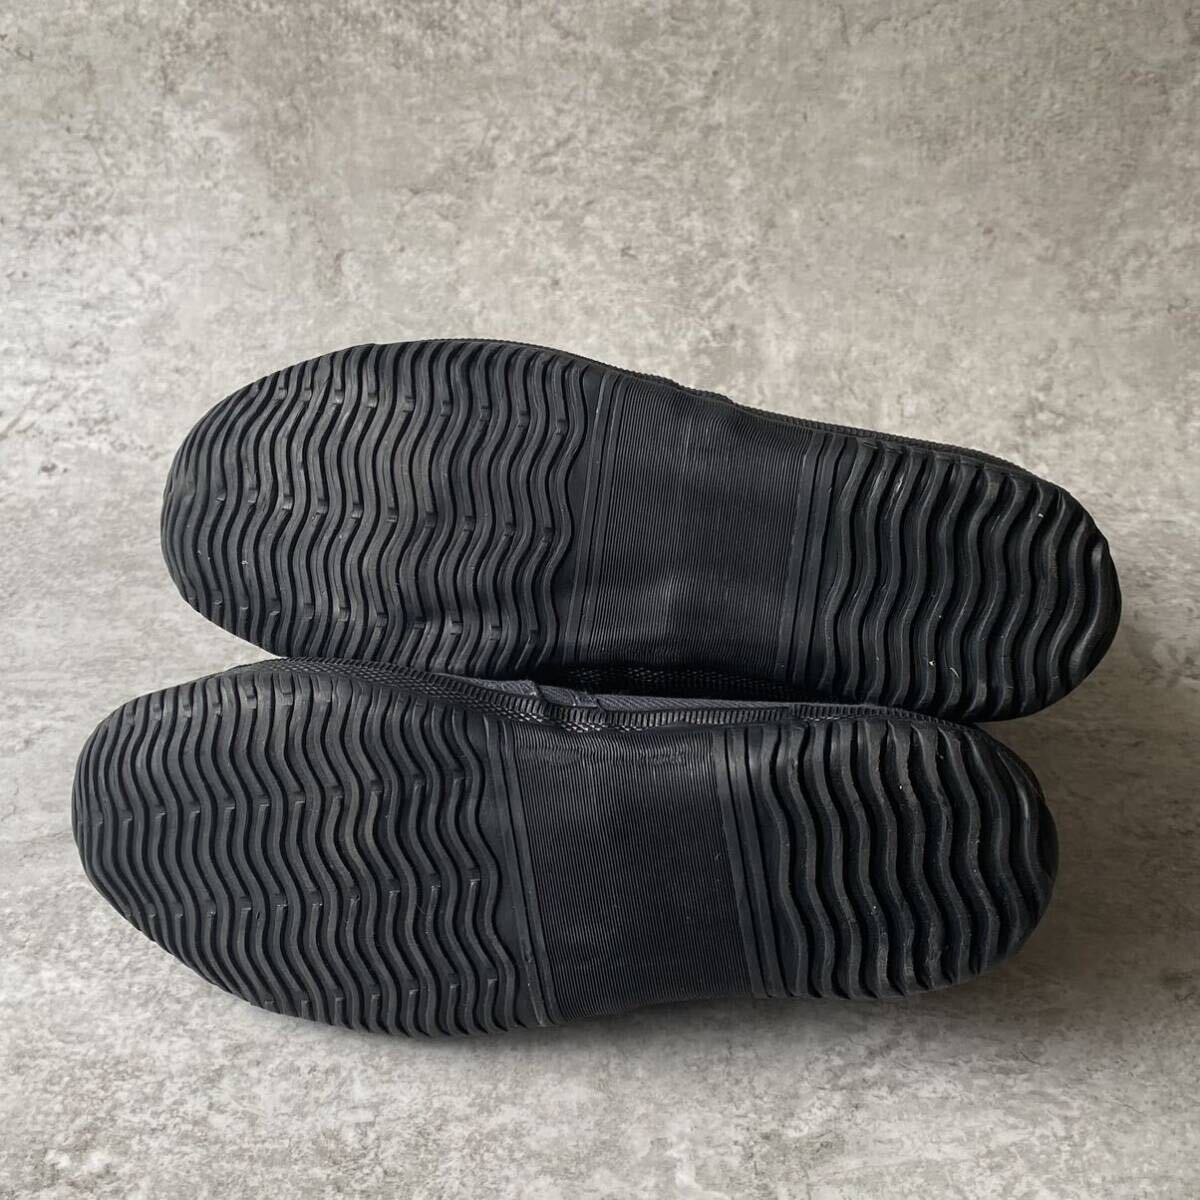  рабочая обувь мужской 25.5 энергия Ace высокий защита безопасность рабочая обувь пальцы ног медь сердцевина ввод текстильная застёжка ботинки - ikatto серый 